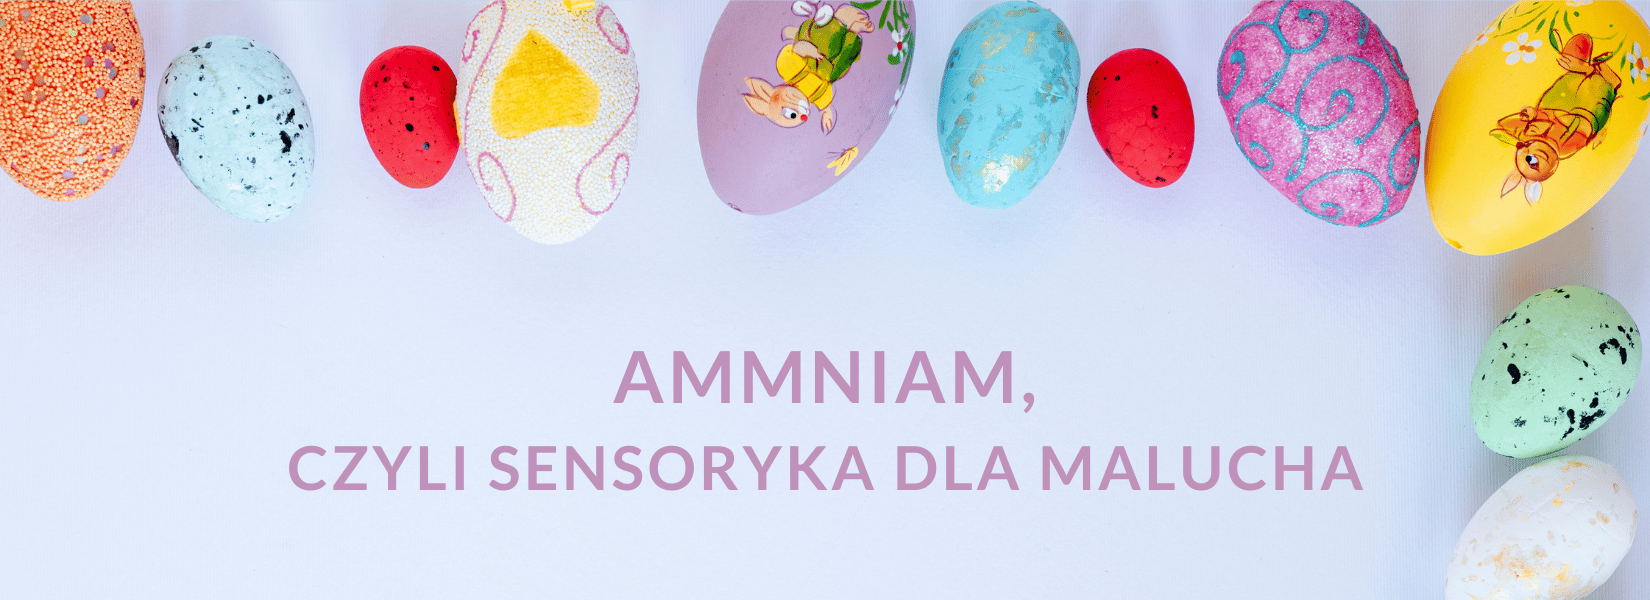 Wielkanocne dylematy. Jajka i inne potrawy świąteczne dla maluszka | Sensoryka dla malucha